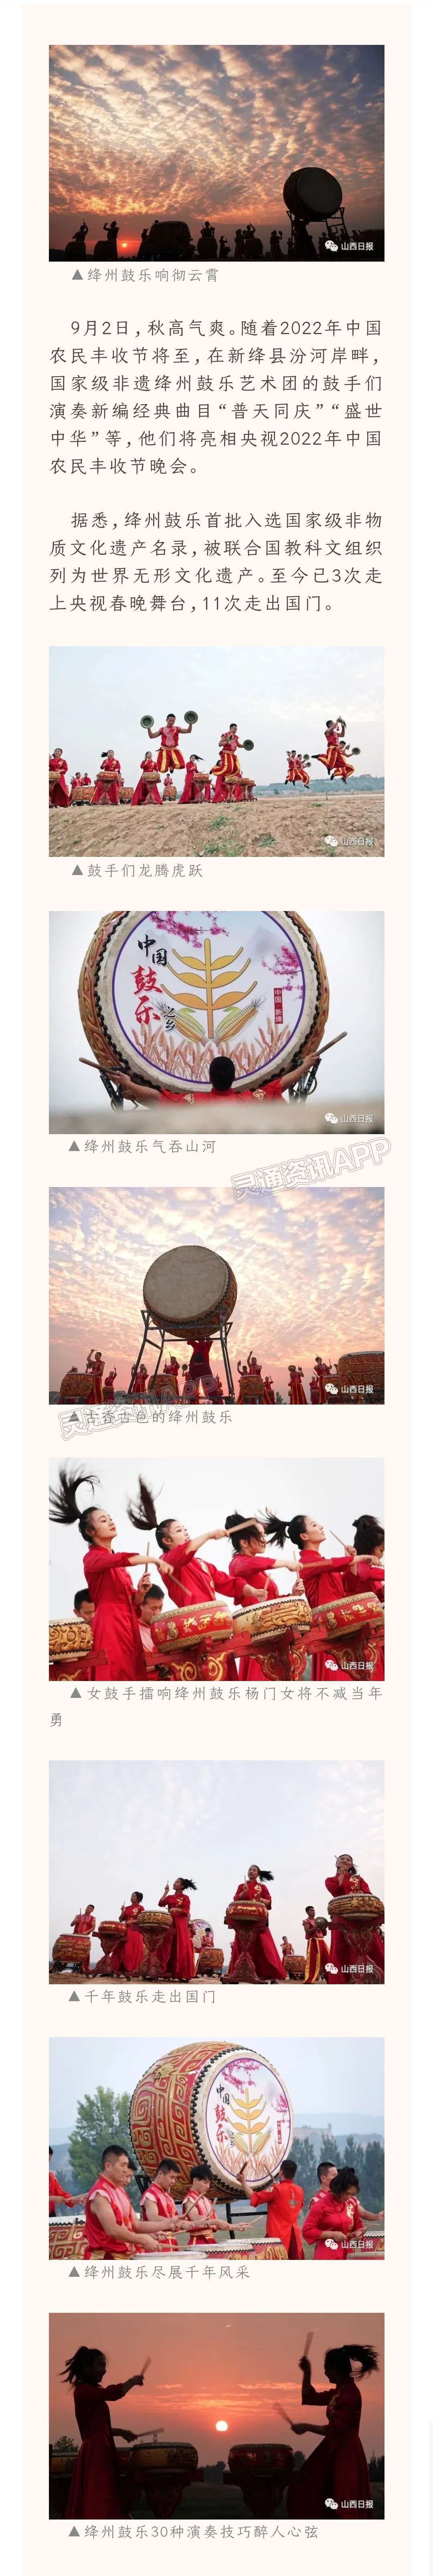 期待！绛州鼓乐艺术团将亮相央视2022年中国农民丰收节晚会_AG体育App下载